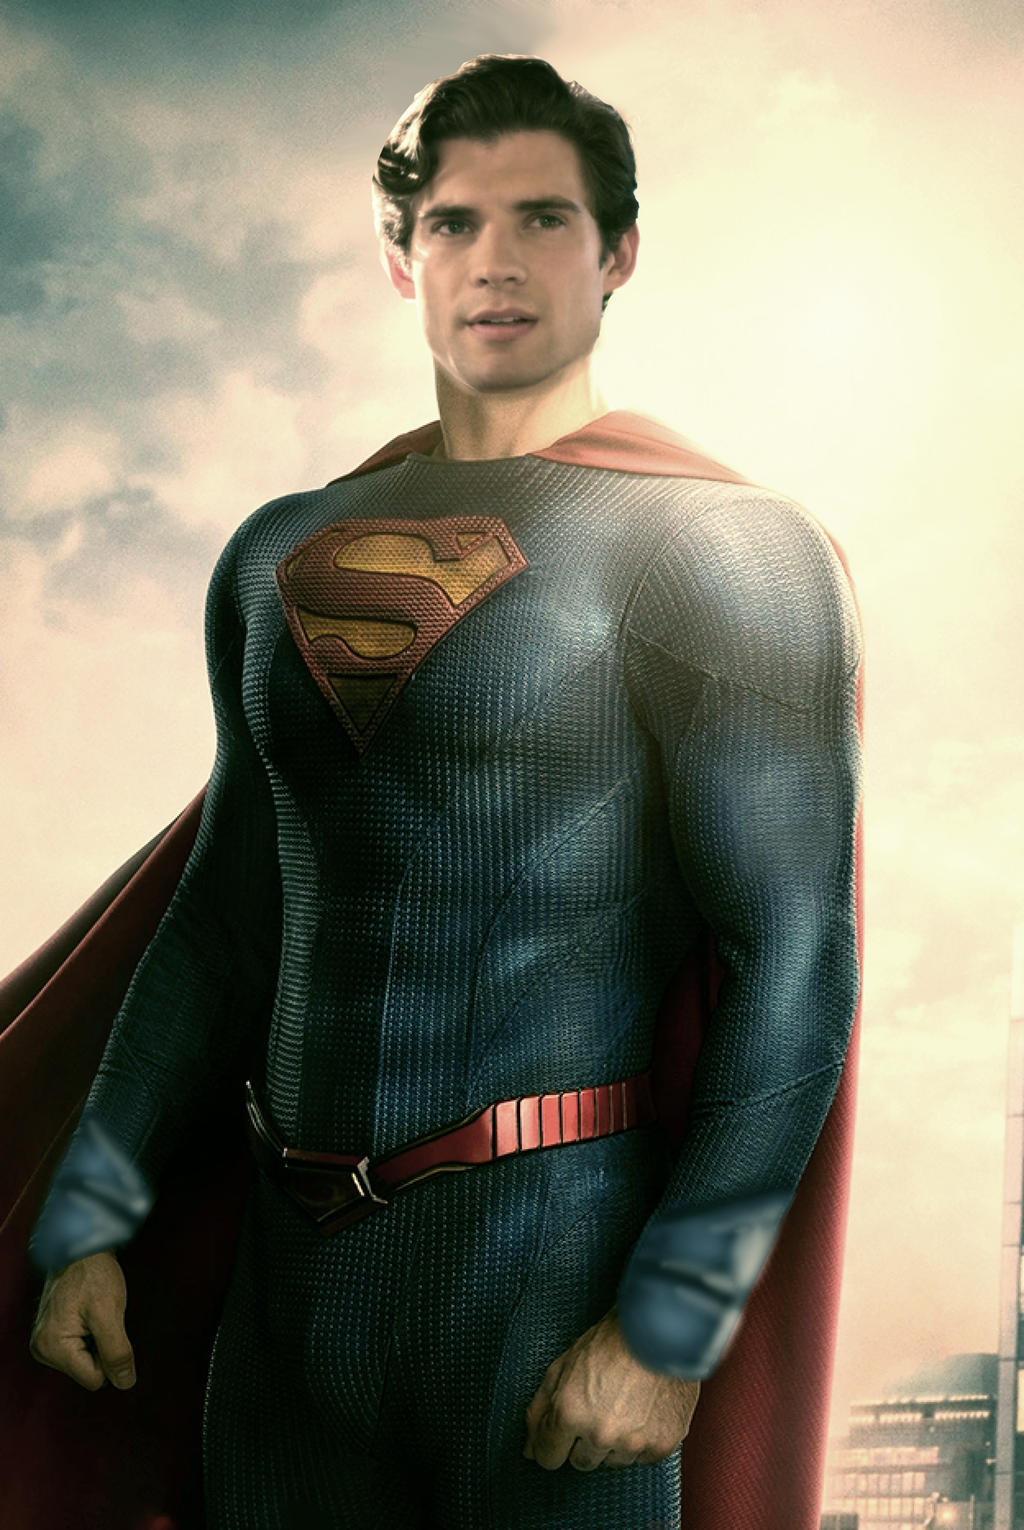 David Corenswet “gây sốt” với người hâm mộ trong tạo hình Superman. Ảnh: Xinhua 